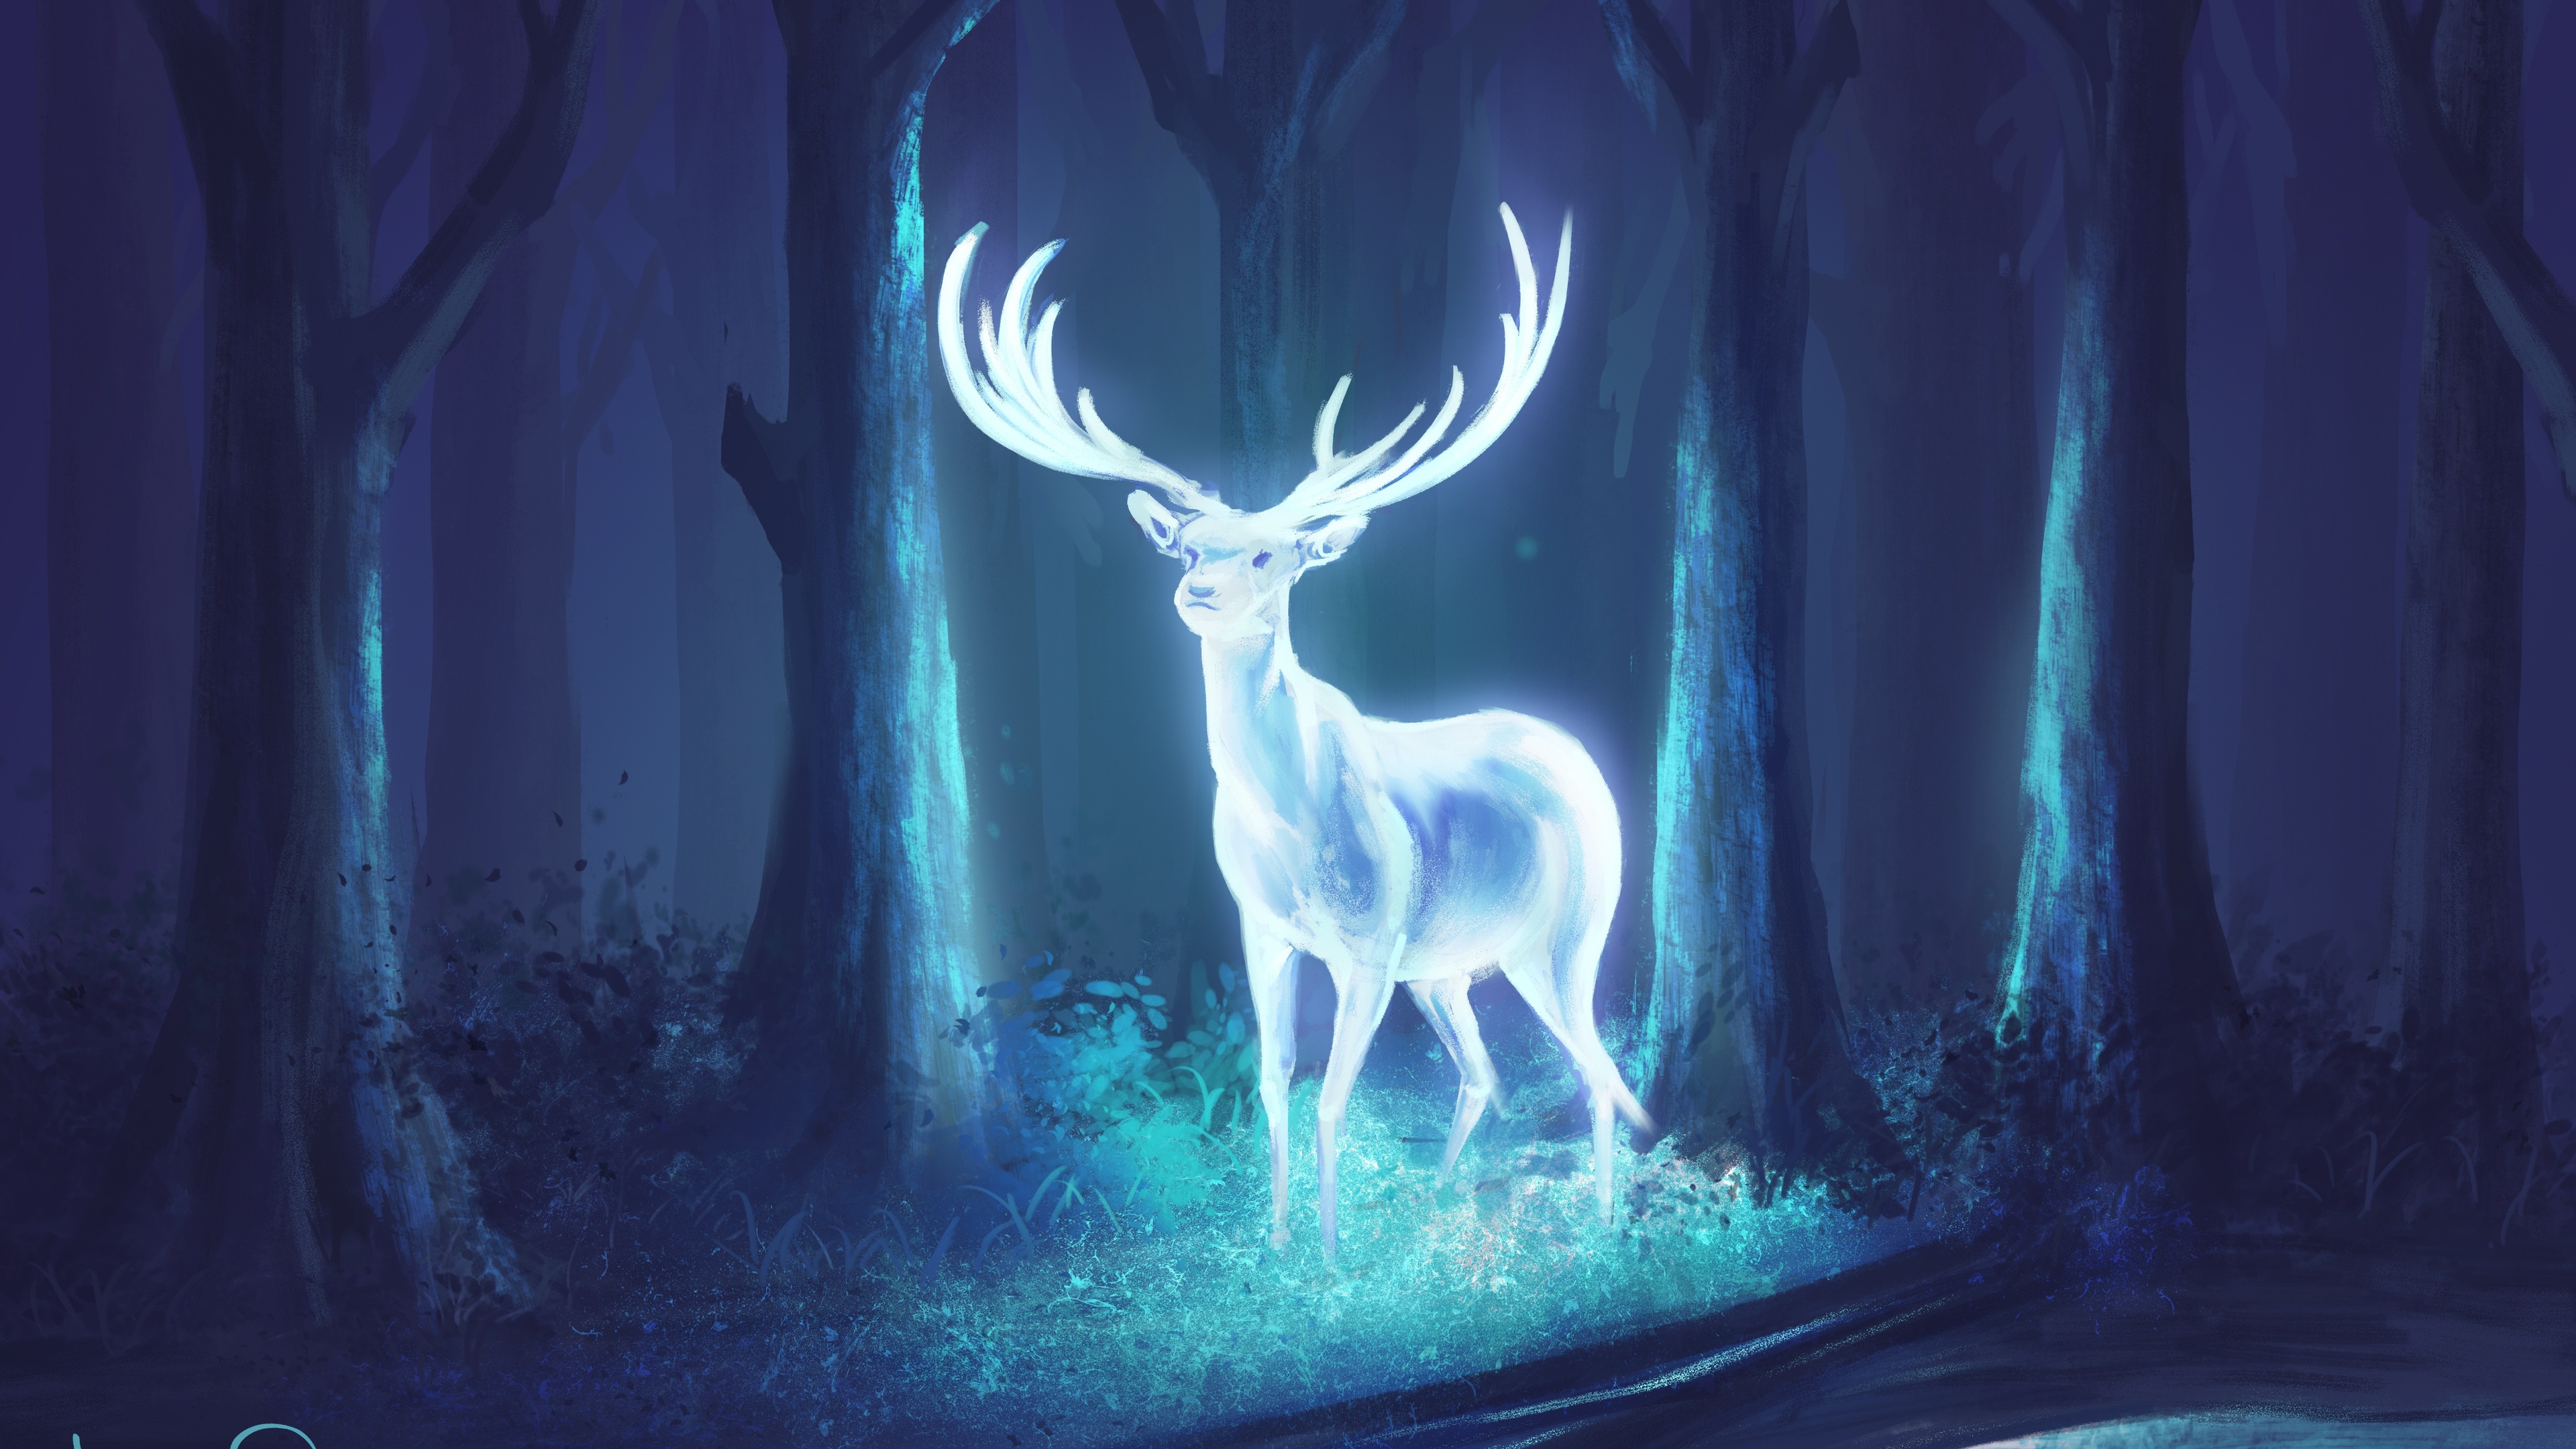 Đừng bỏ lỡ bức ảnh Deer Fantasy Artwork mộng mơ này! Hãy cùng trải nghiệm thiên nhiên kỳ ảo trong nghệ thuật với bức ảnh này. Chúng tôi cam kết sẽ đưa đến cho bạn một bức ảnh đẹp nhất với chất liệu tốt nhất!